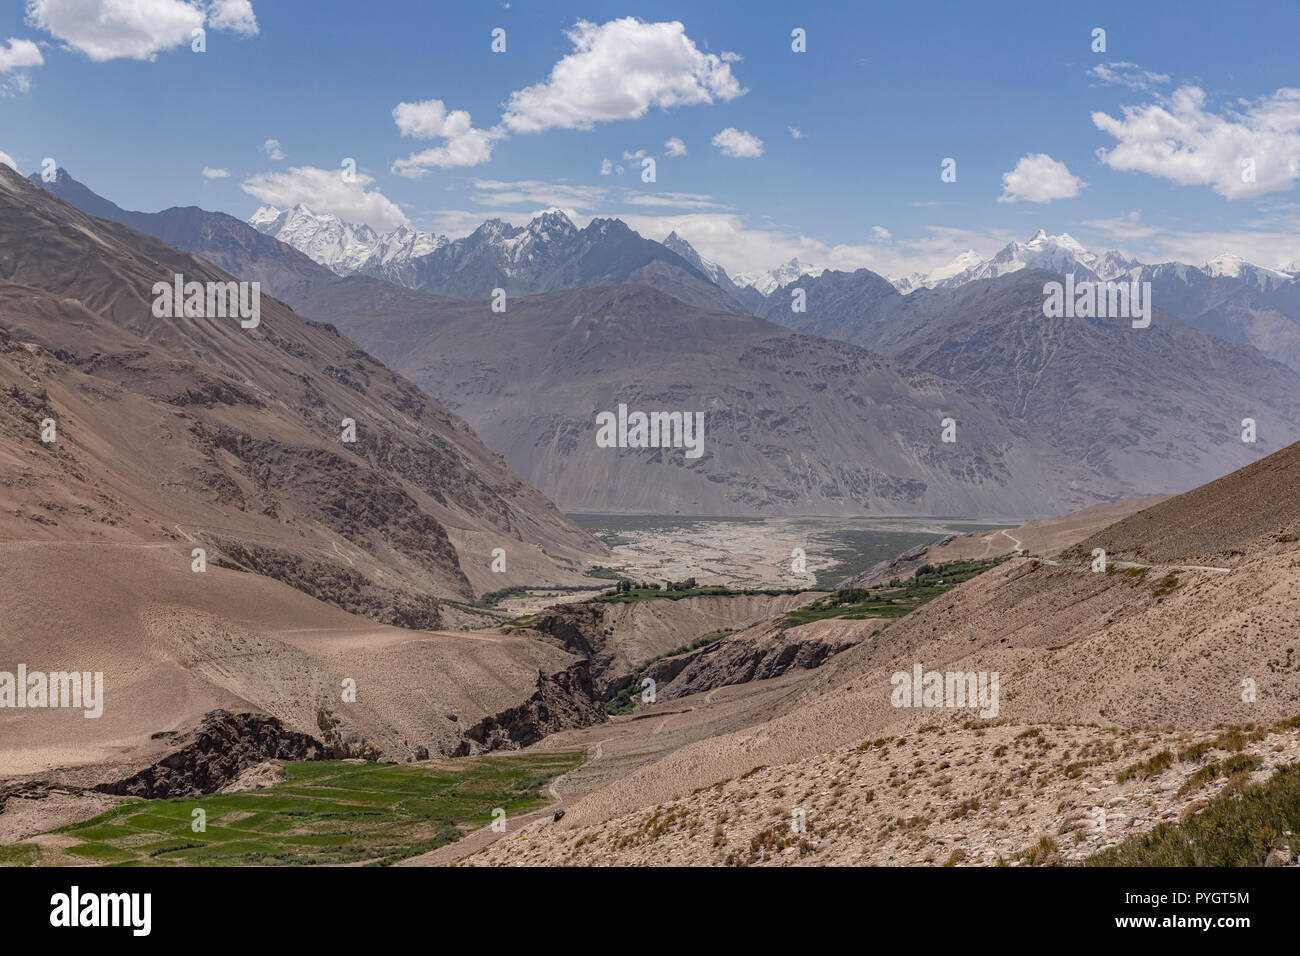 Confluent de la rivière Pamir et Wakhan, vu de la rivière Wakhan tadjike est de Langar, montagnes du Pamir, au Tadjikistan Banque D'Images